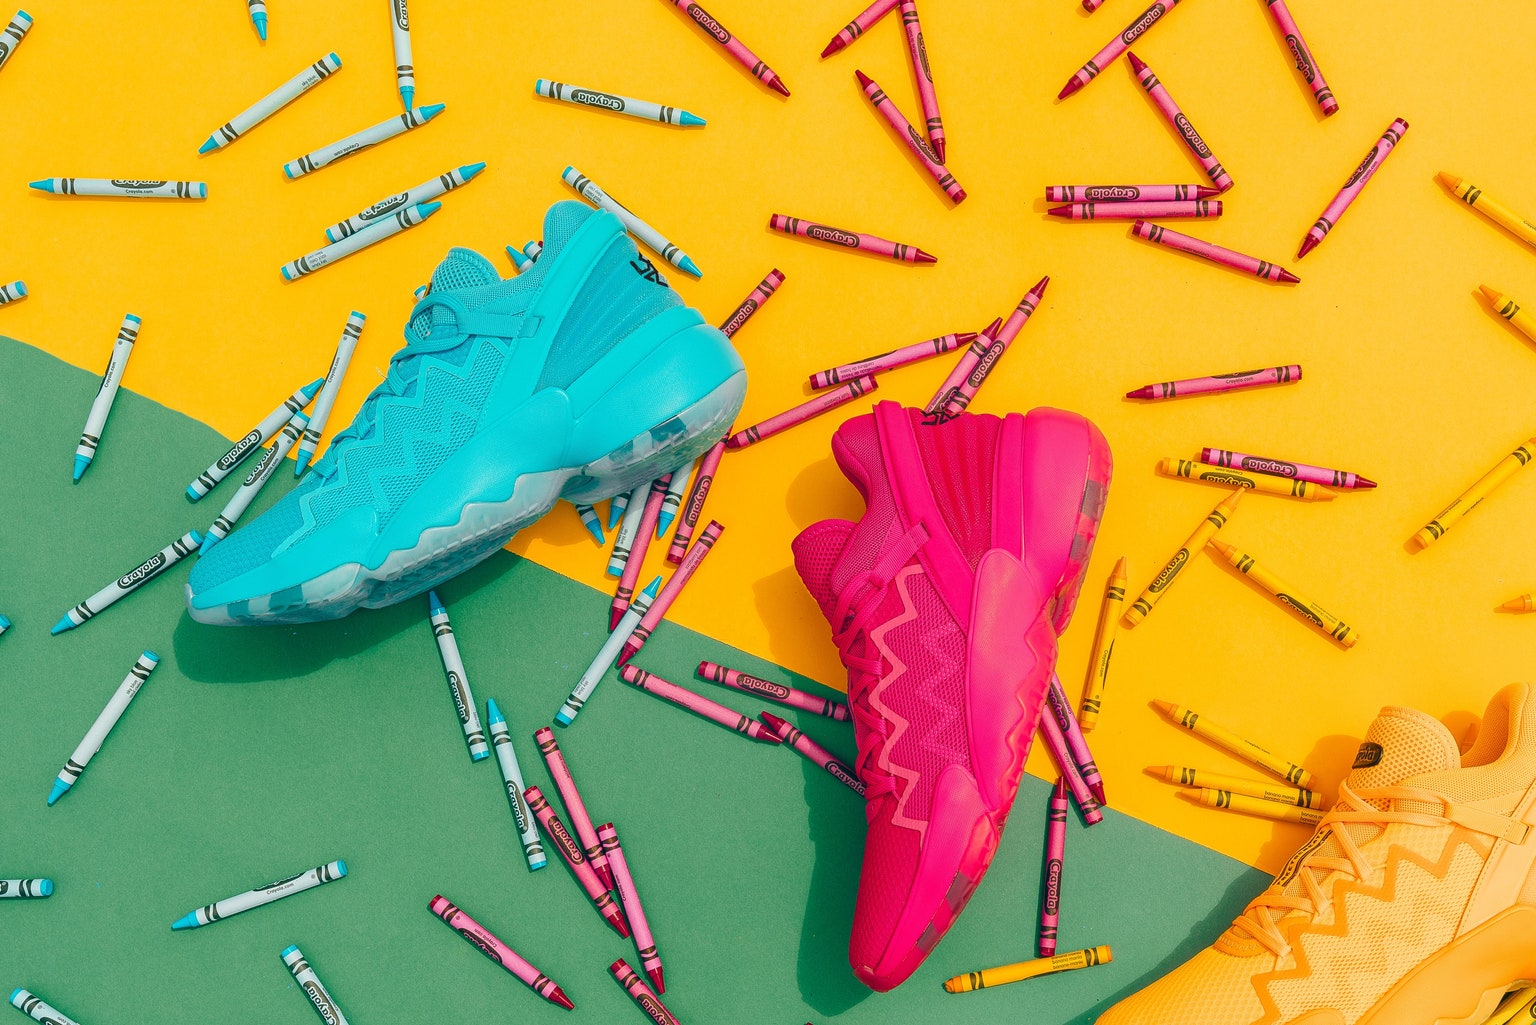 Adidas Crayola tenis colaboracion tendencia